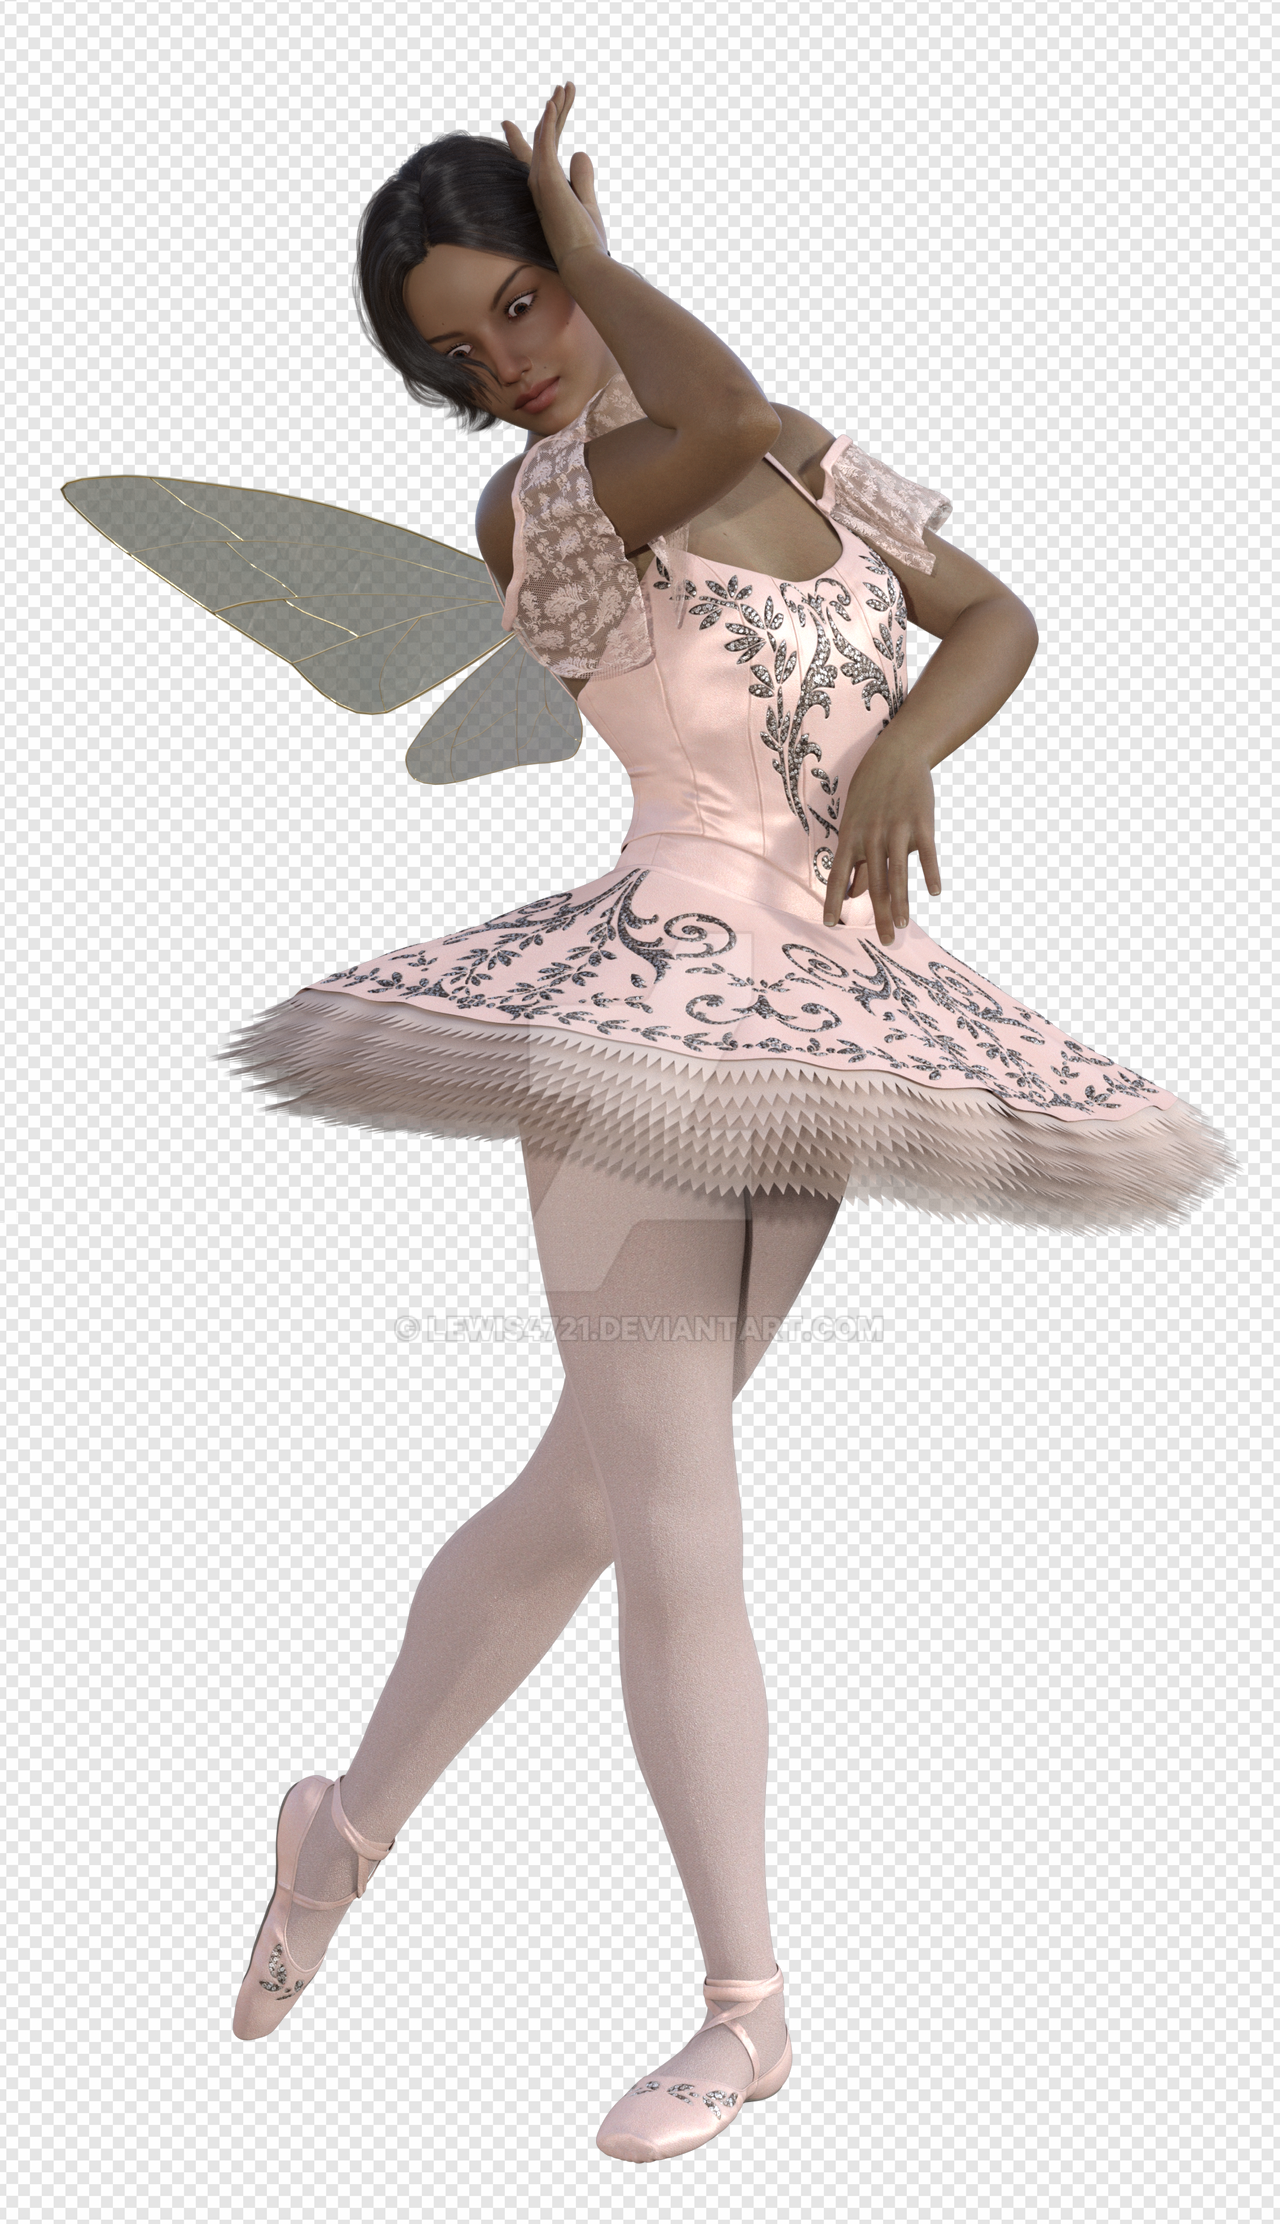 Ballerina PNG Transparent Images Download - PNG Packs